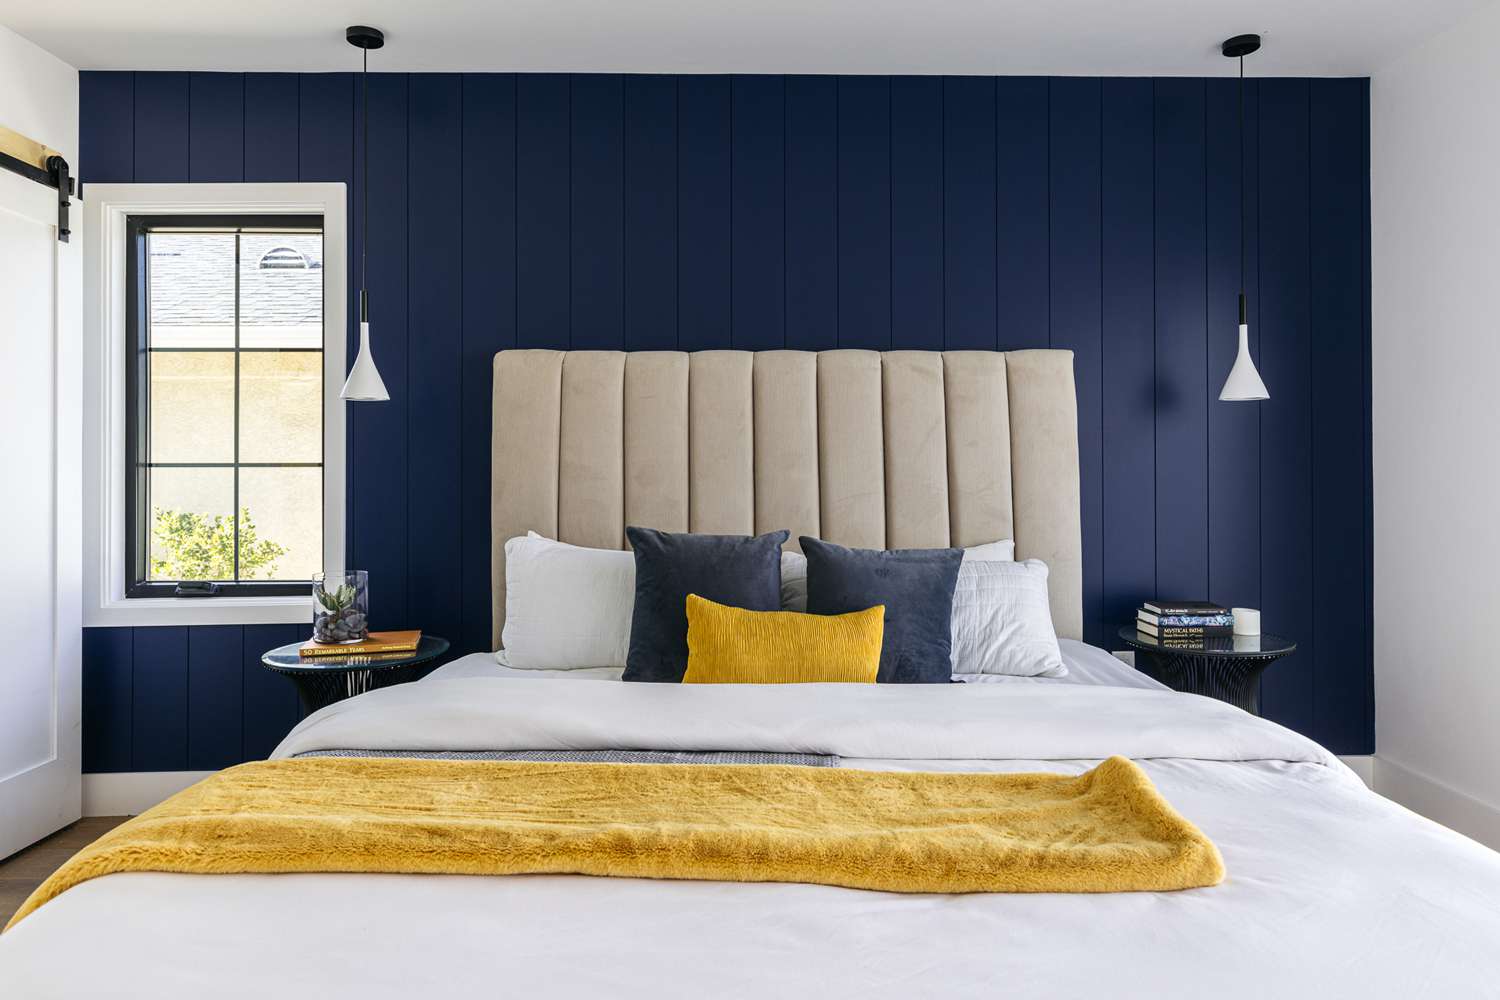 Mur d'accent en shiplap bleu foncé et couverture jaune pliée sur le lit fait